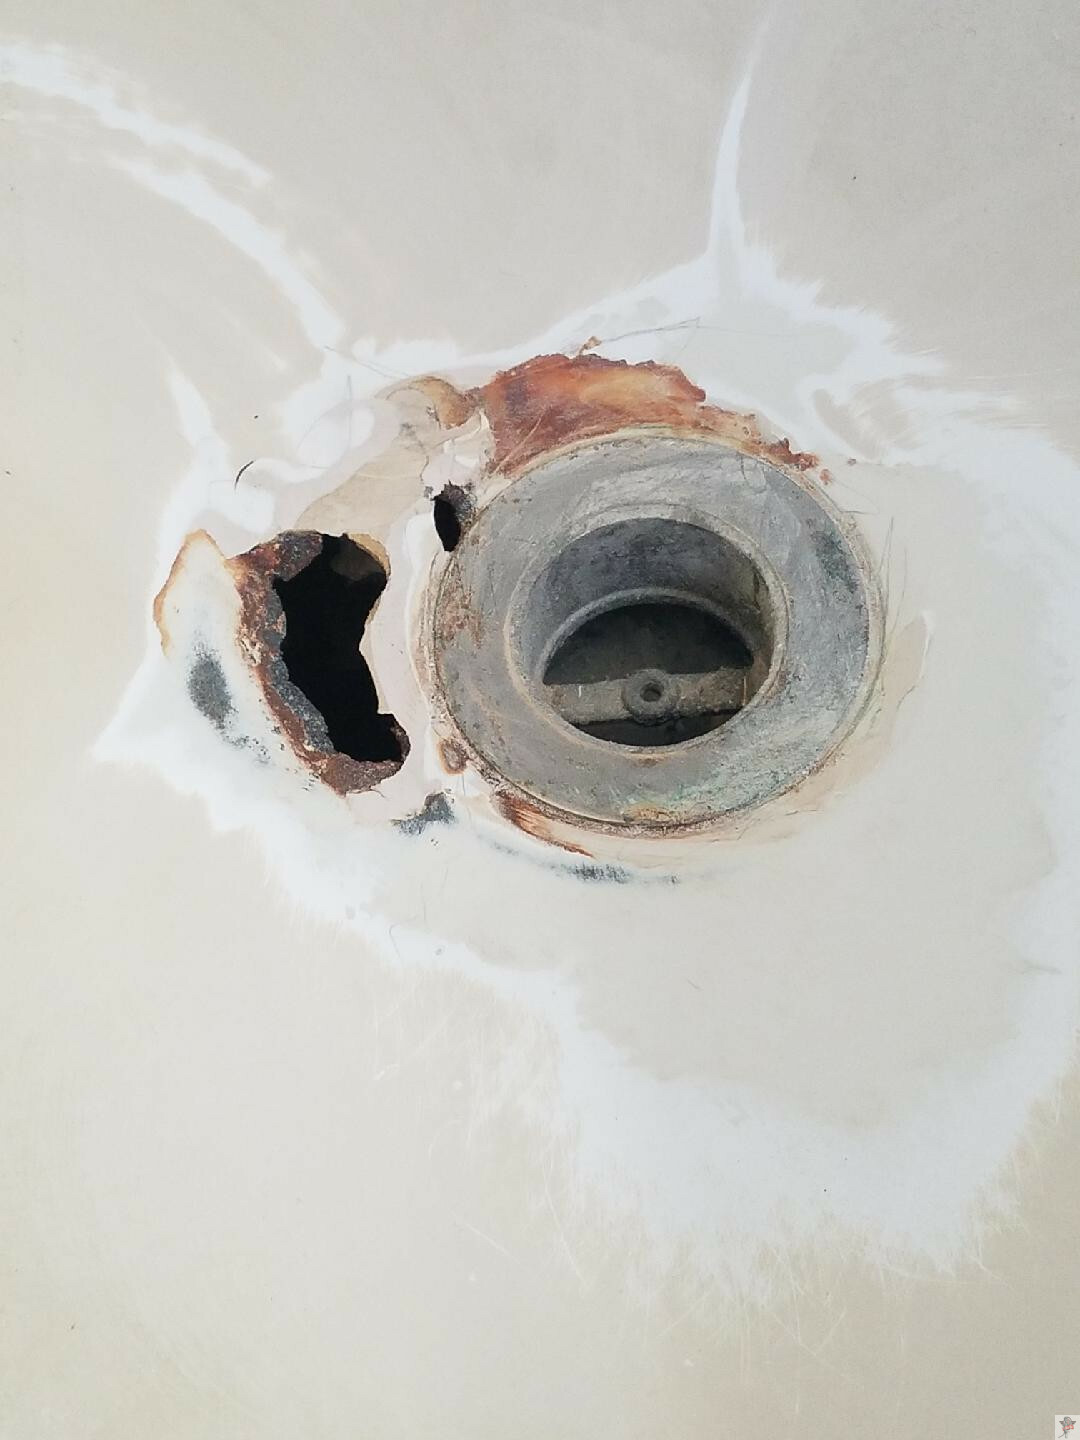 Tub Refinishing Repair Rust More, How To Repair Rusted Bathtub